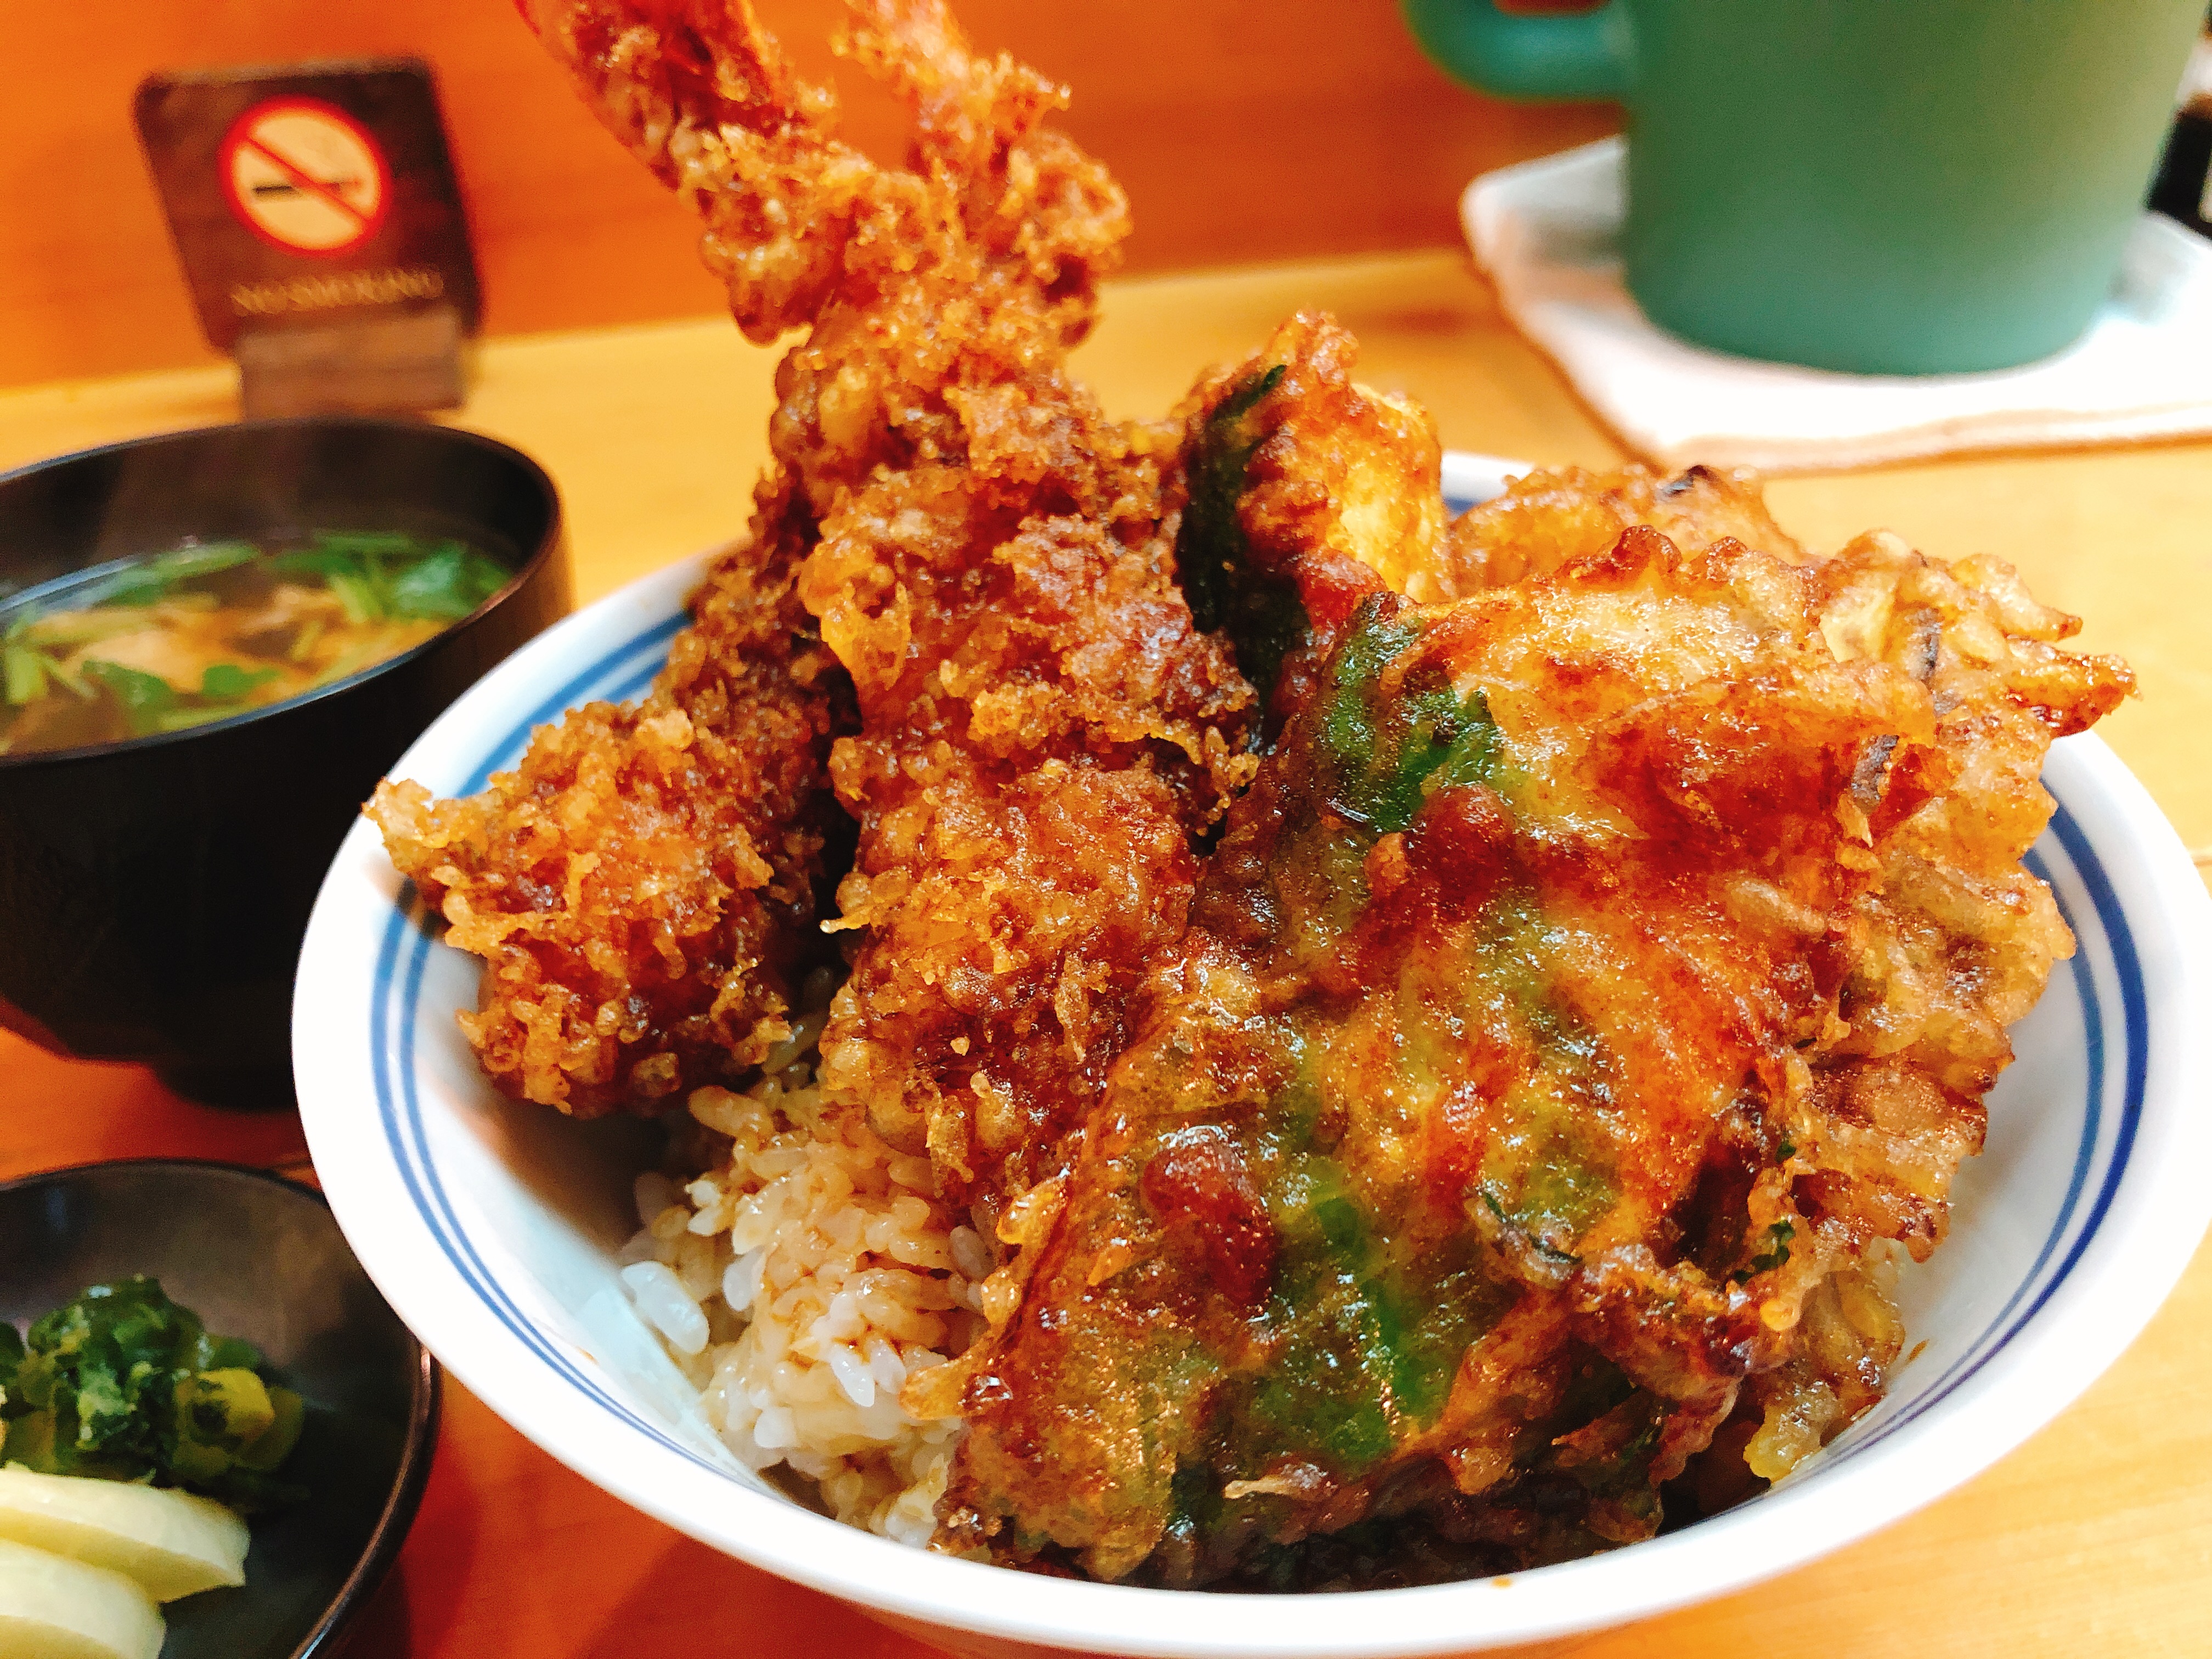 梅田 天ぷら 天富 サクサク天ぷらと濃い味がクセになる 大阪では珍しい絶品関東風天丼で豪華な北新地ランチを堪能 ひろうすの食べ飲み遊び